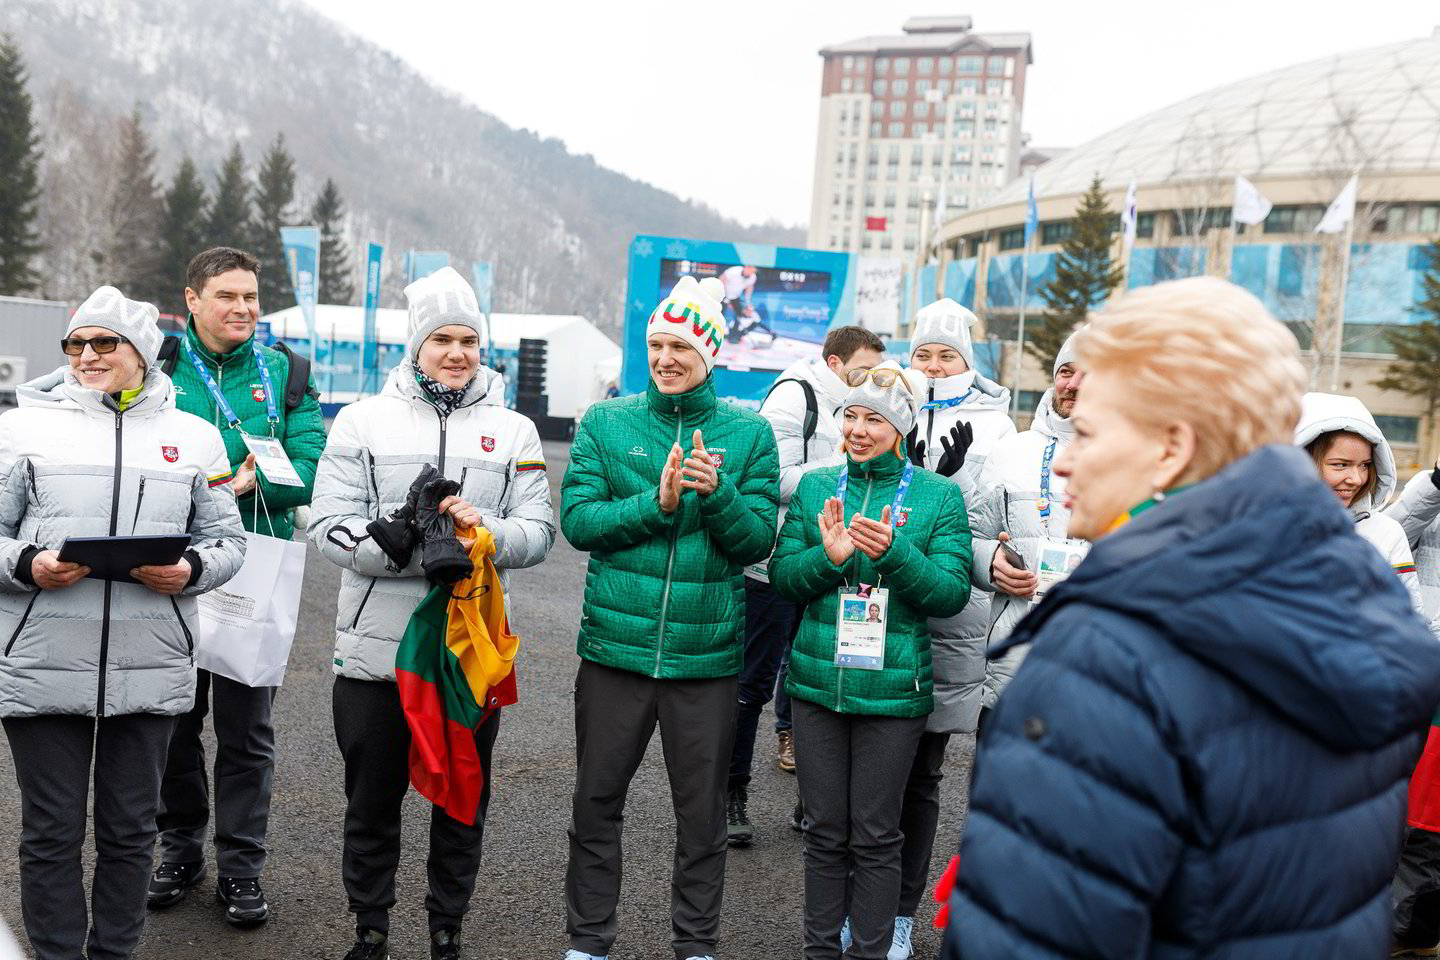  D.Grybauskaitė Pjongčango olimpiniame kaimelyje aplankė Lietuvos sportininkus ir delegaciją.<br> V.Dranginio nuotr.